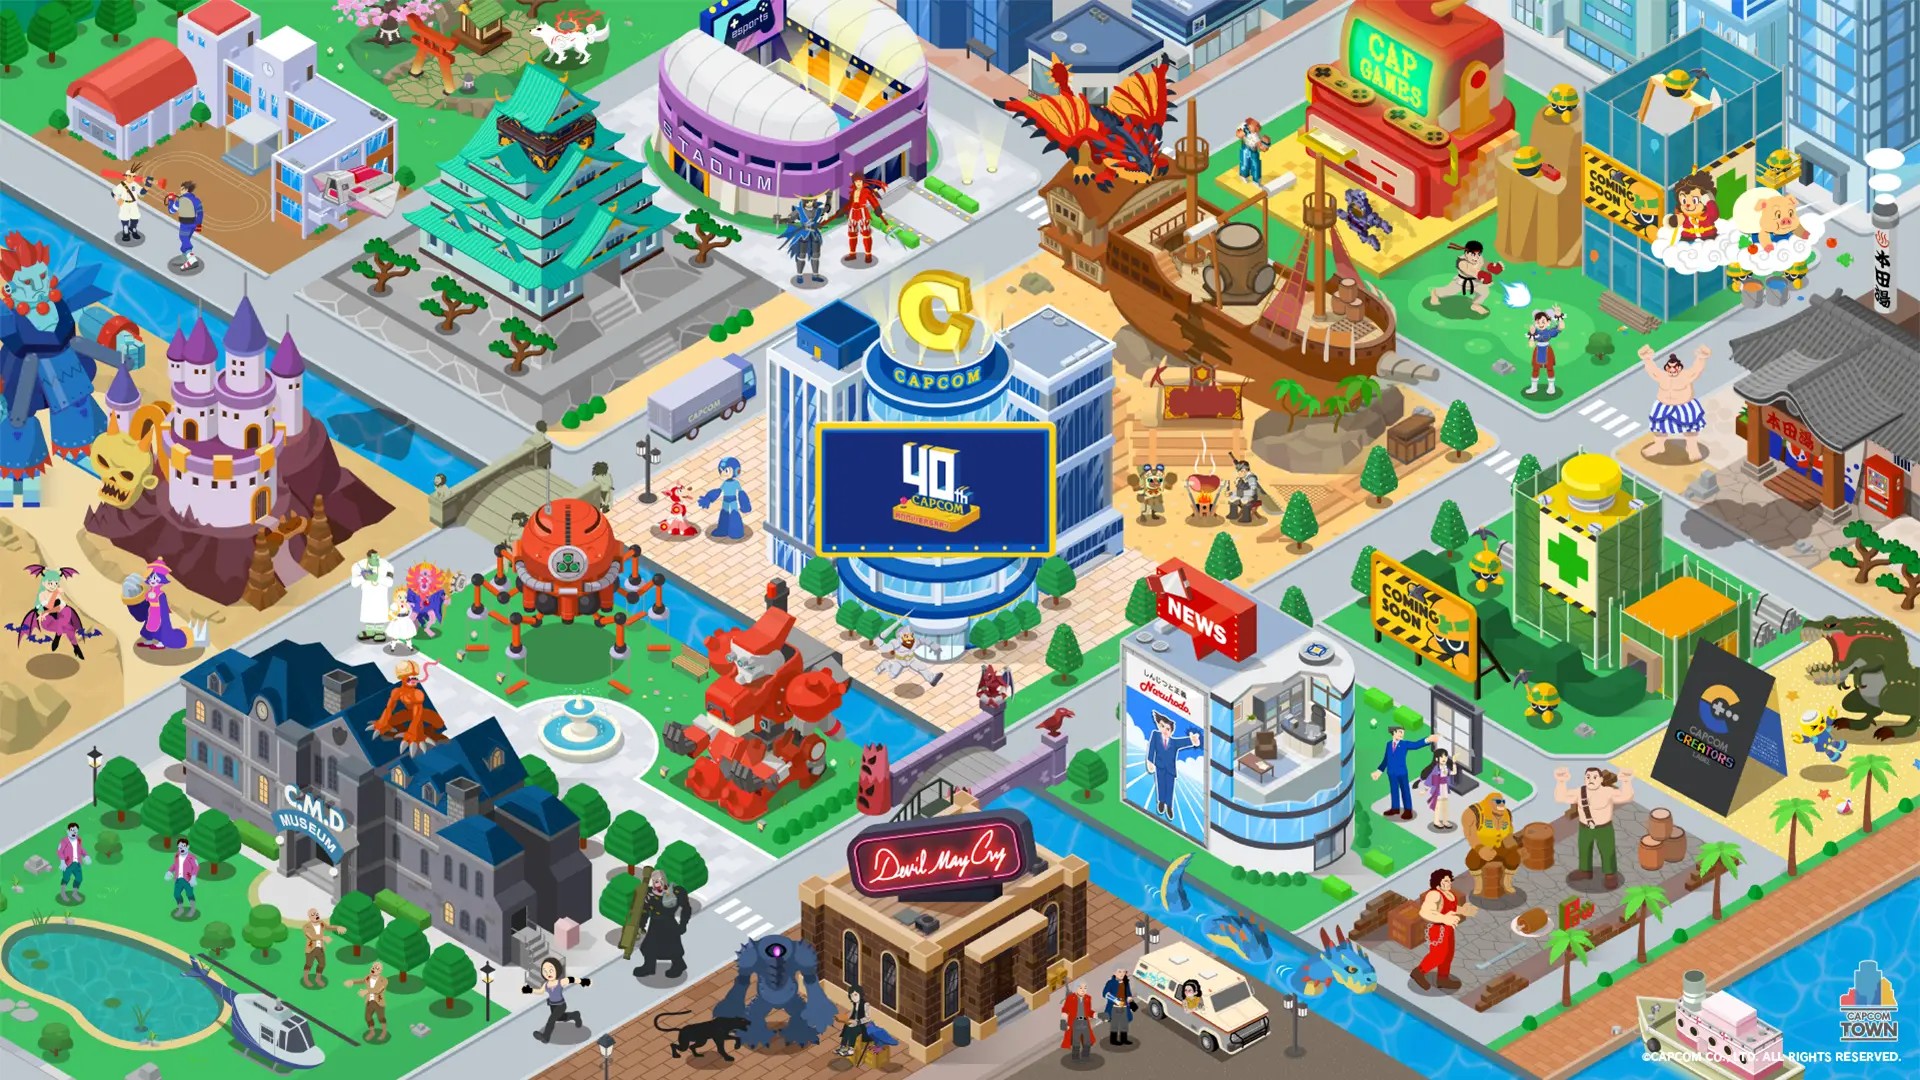 Capcom Town recebe três novos jogos retrô gratuitos e textos em